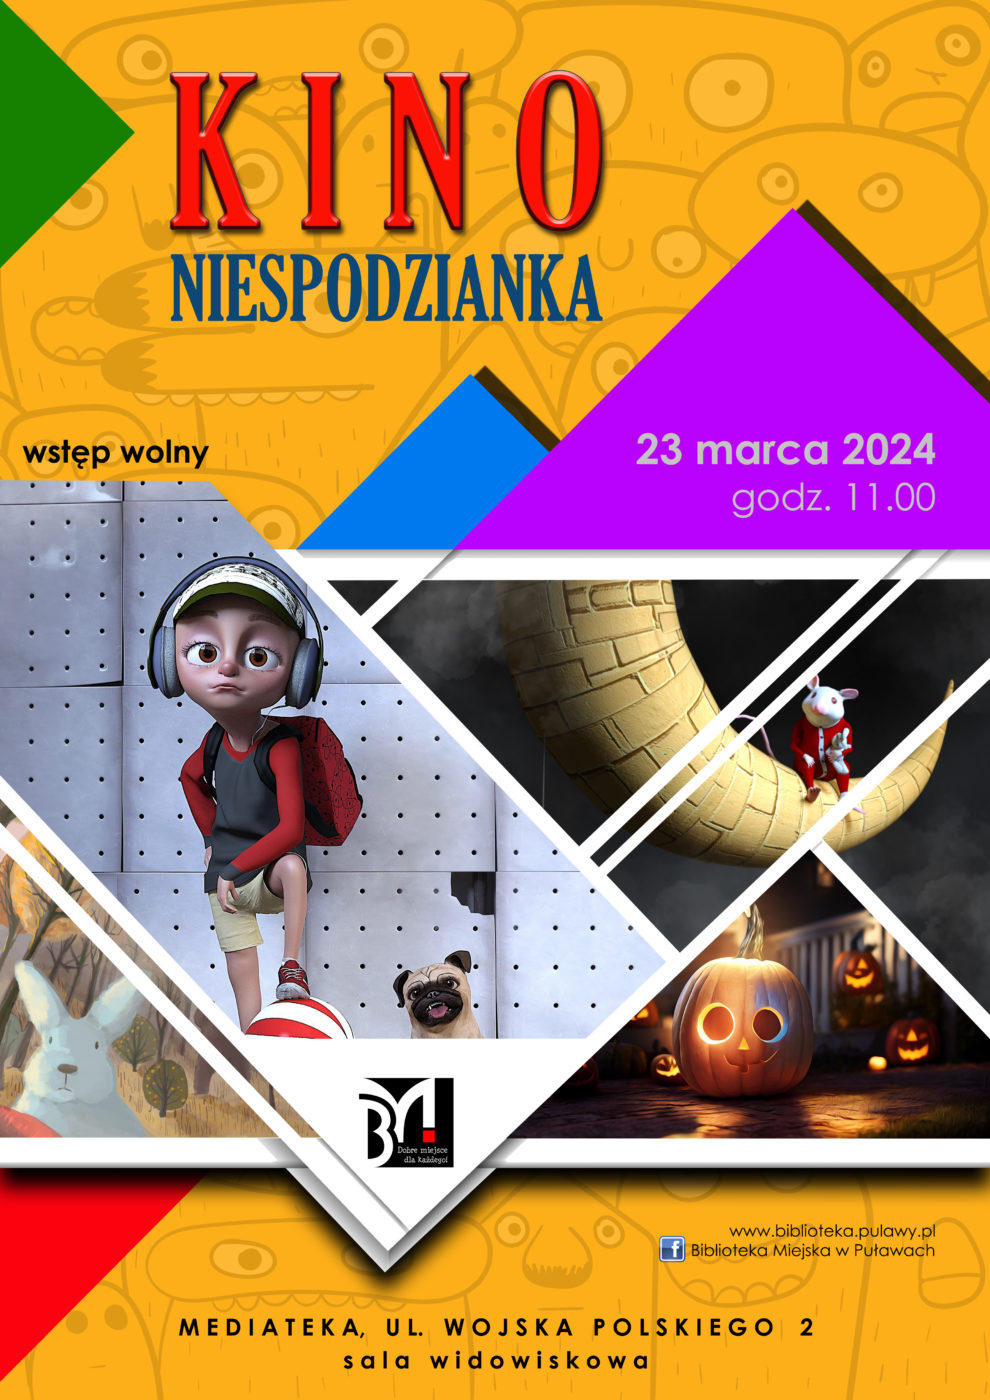 Kino Niespodzianka - seans rodzinny. 23 marca 2024, godz. 11.00. Mediateka, ul. Wojska Polskiego 2, sala widowiskowa.